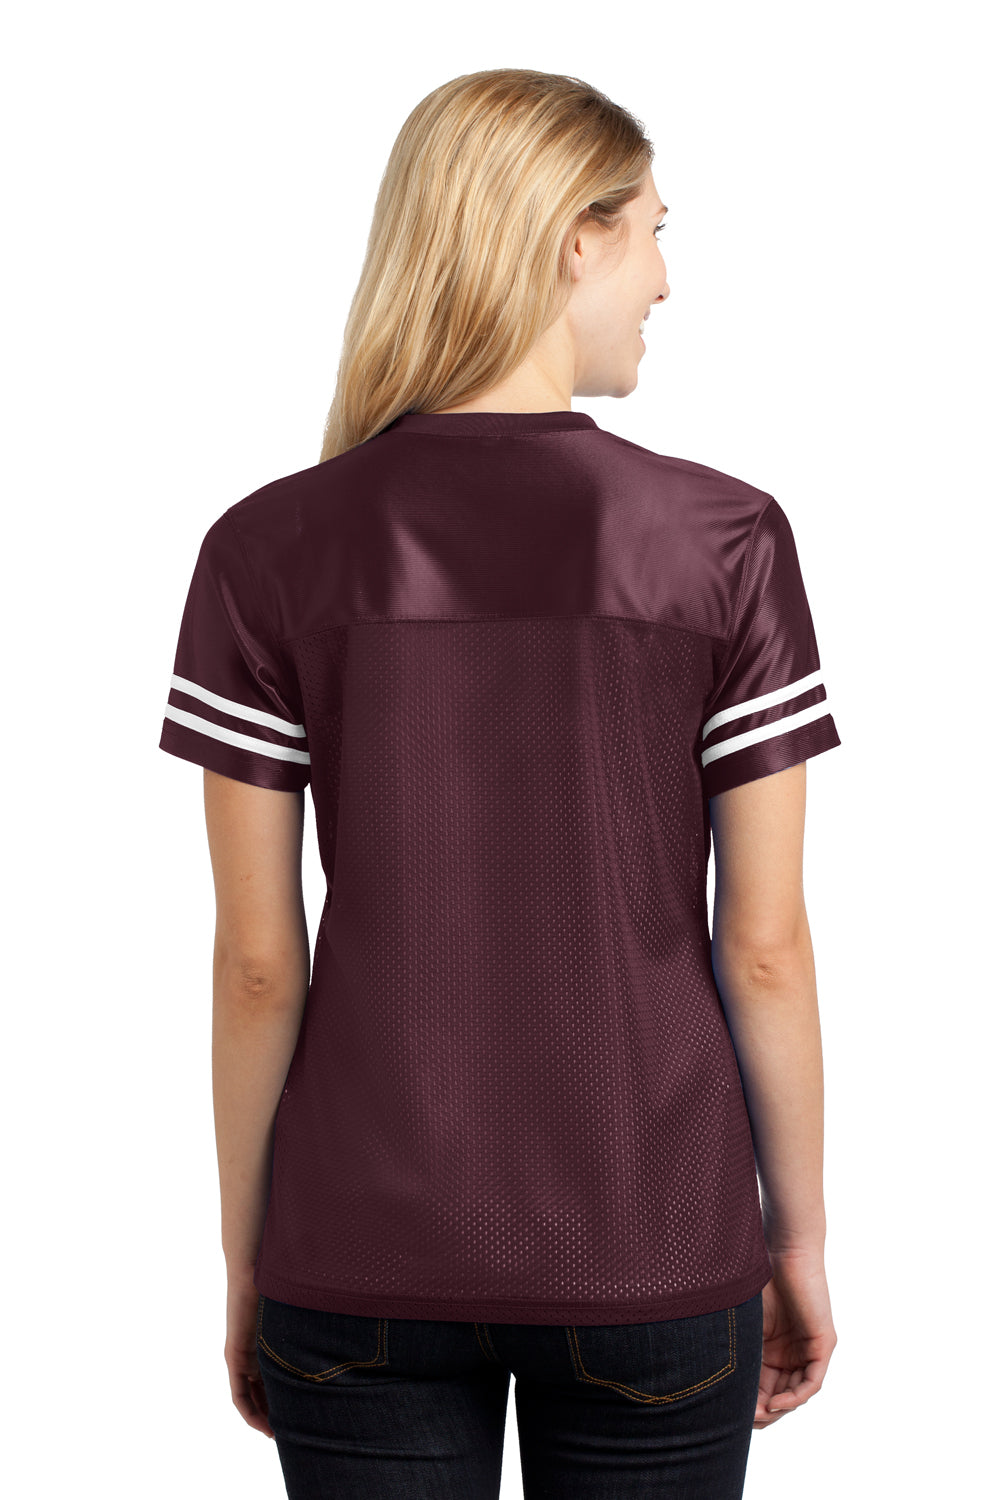 Sport-Tek LST307 Womens Short Sleeve V-Neck T-Shirt Maroon Back